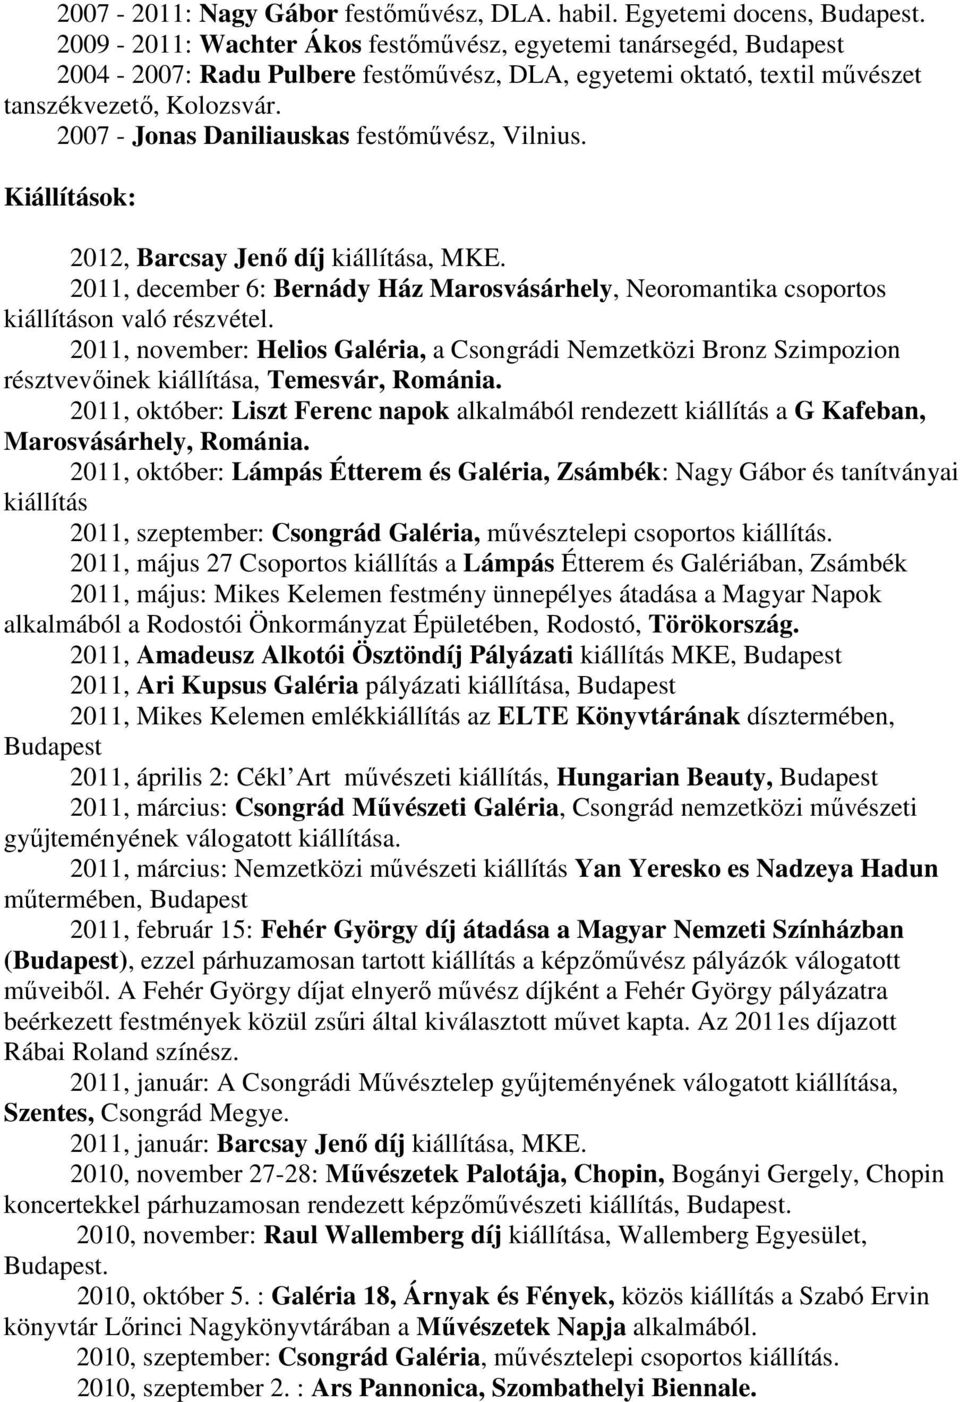 2007 - Jonas Daniliauskas festőművész, Vilnius. Kiállítások: 2012, Barcsay Jenő díj kiállítása, MKE. 2011, december 6: Bernády Ház Marosvásárhely, Neoromantika csoportos kiállításon való részvétel.